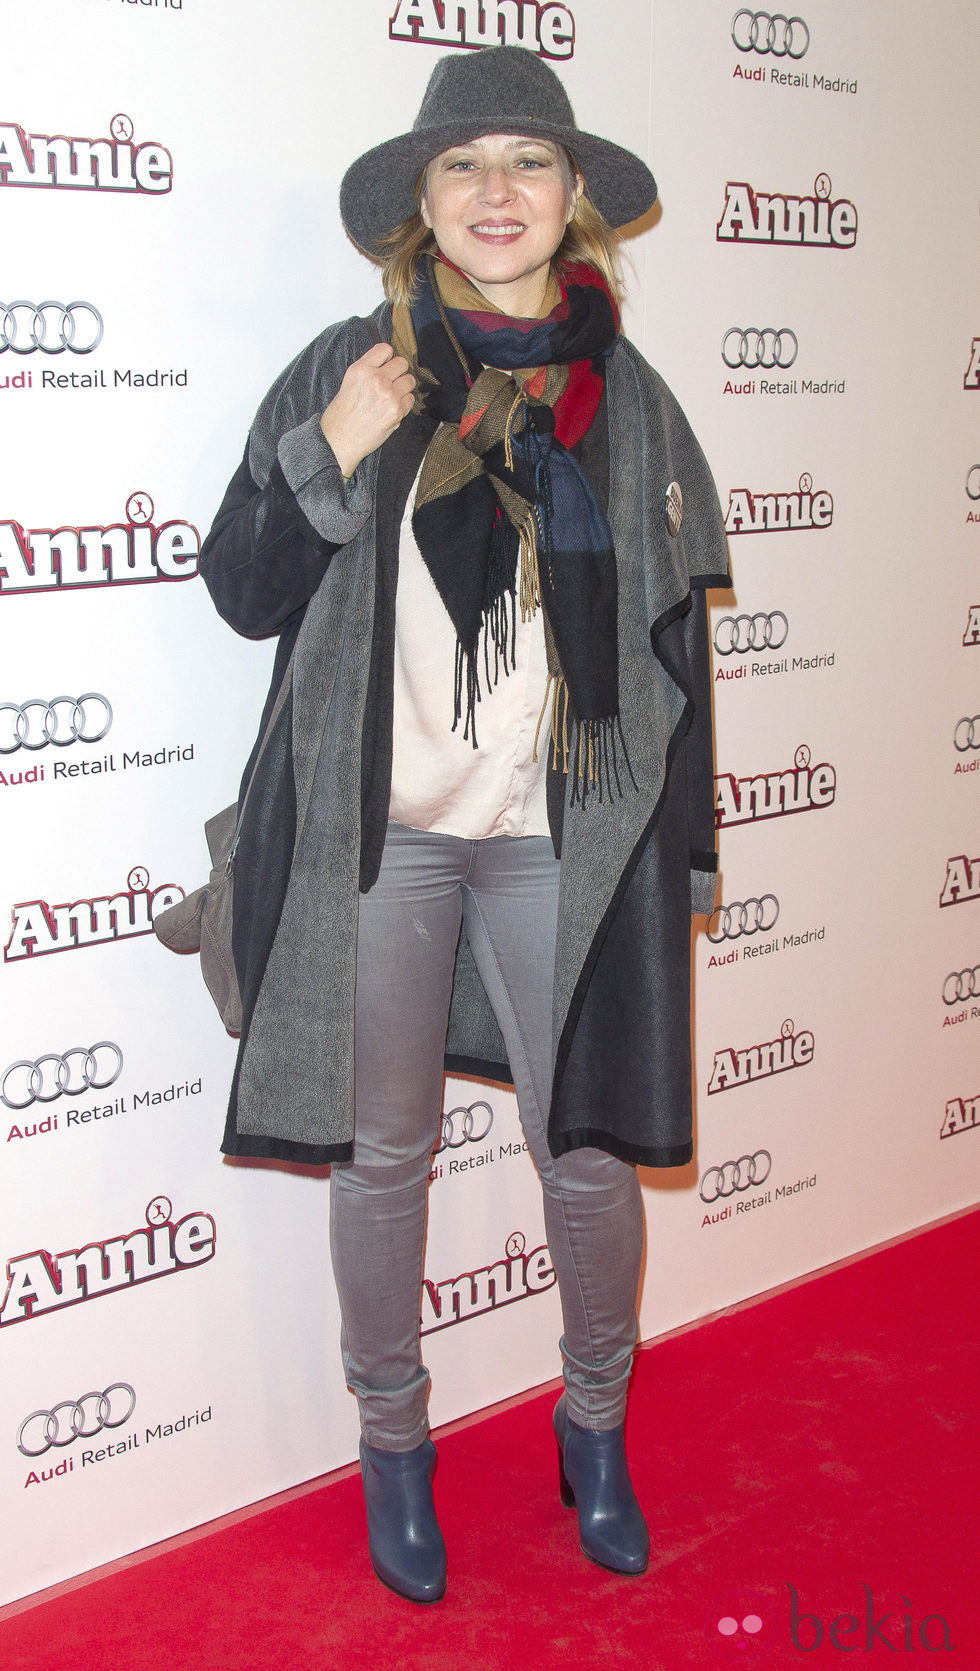 Pilar Castro en la premiere de 'Annie' en Madrid